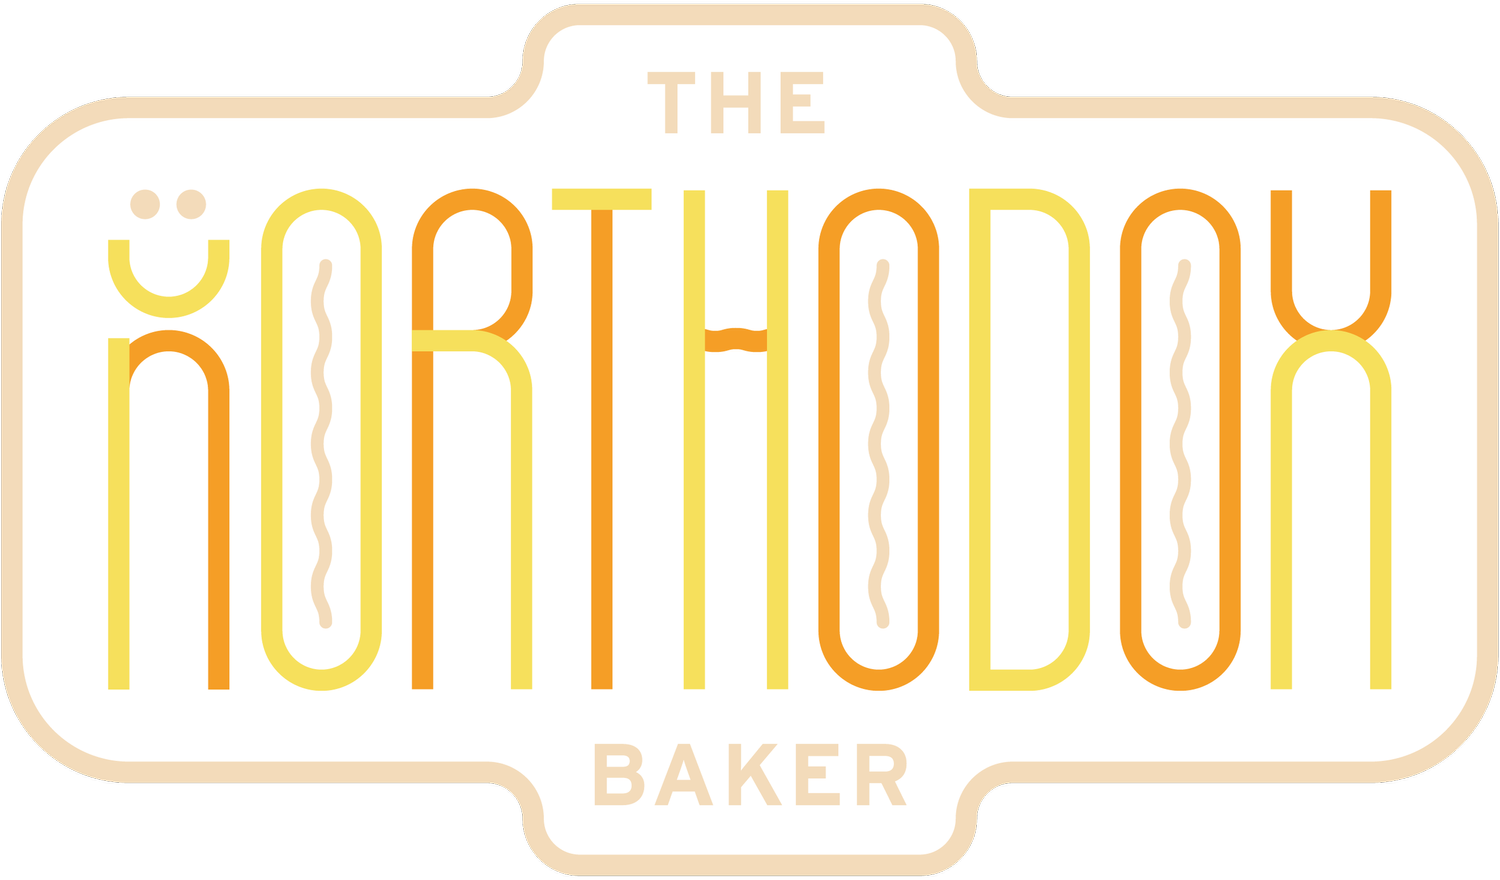 The Unorthodox Baker